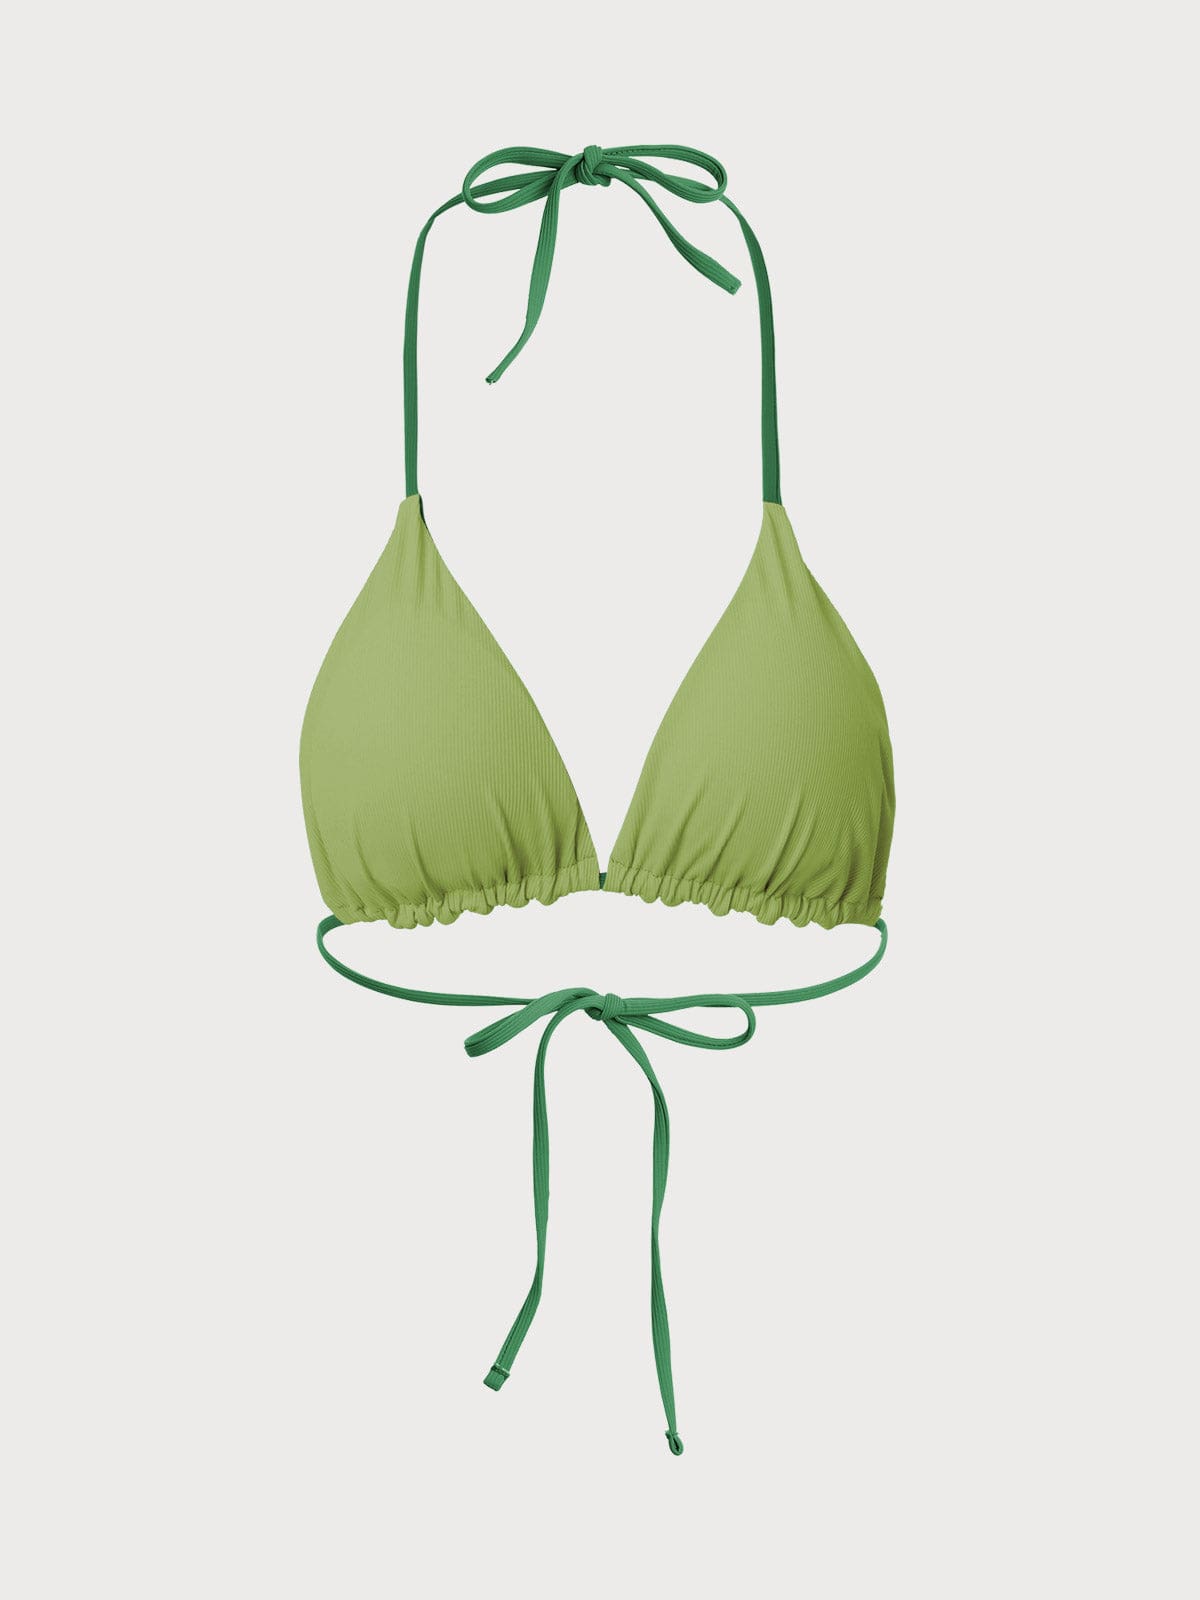 Light Green Bikini Top - Triangle Bikini Top - Women's Swim Top